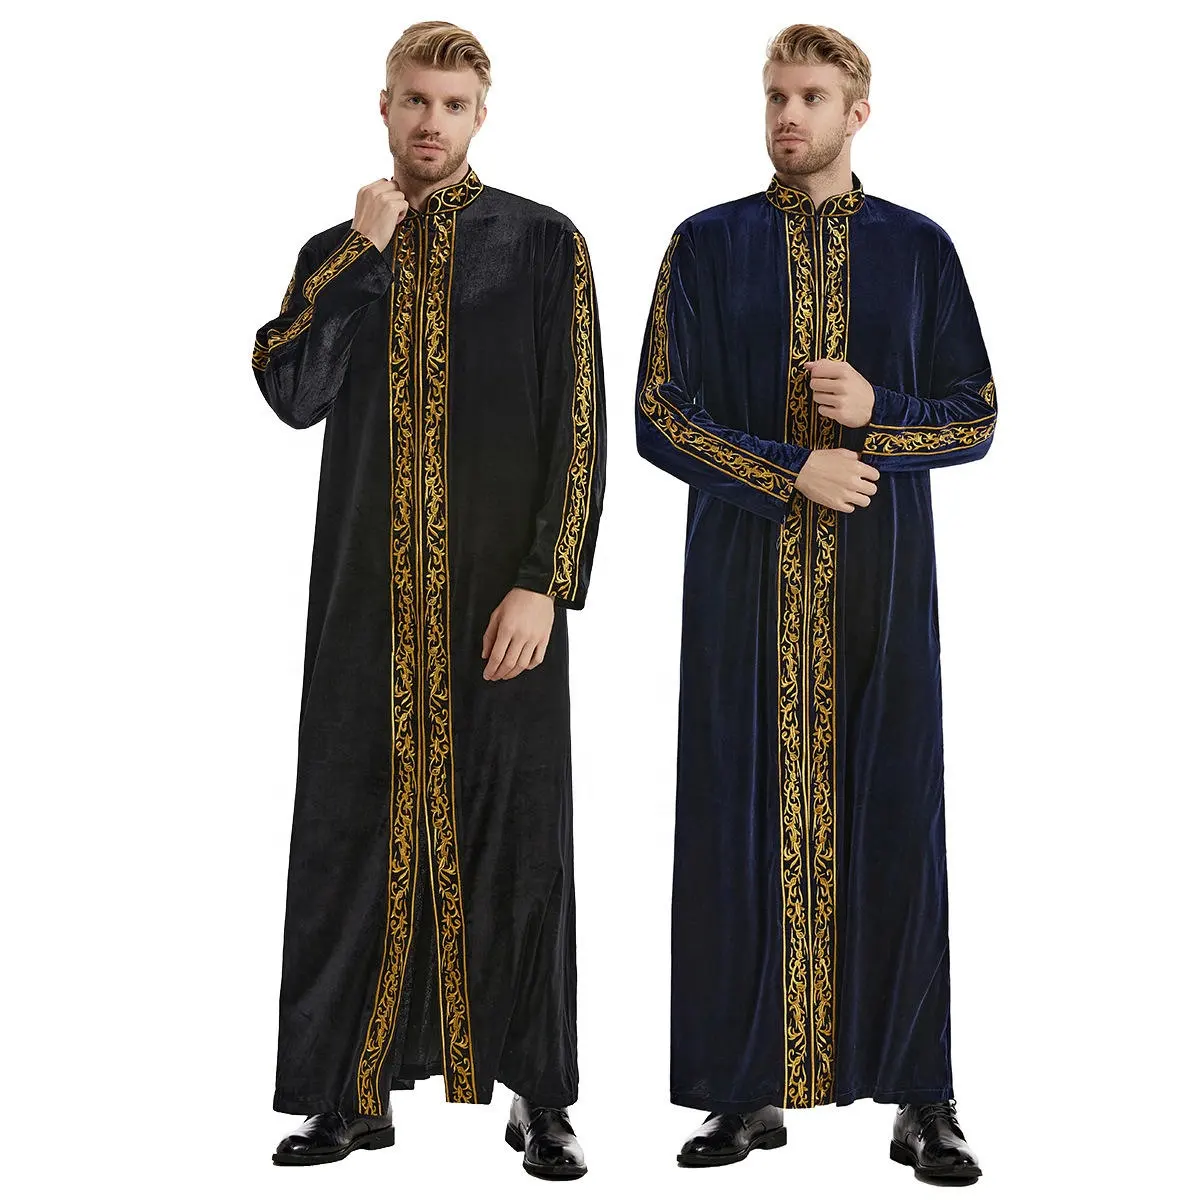 Arap Robe yumuşak nakış uzun kollu uzun elbisesi giyim erkekler için müslüman elbise erkek Kaftan çarşaf İslami sonbahar